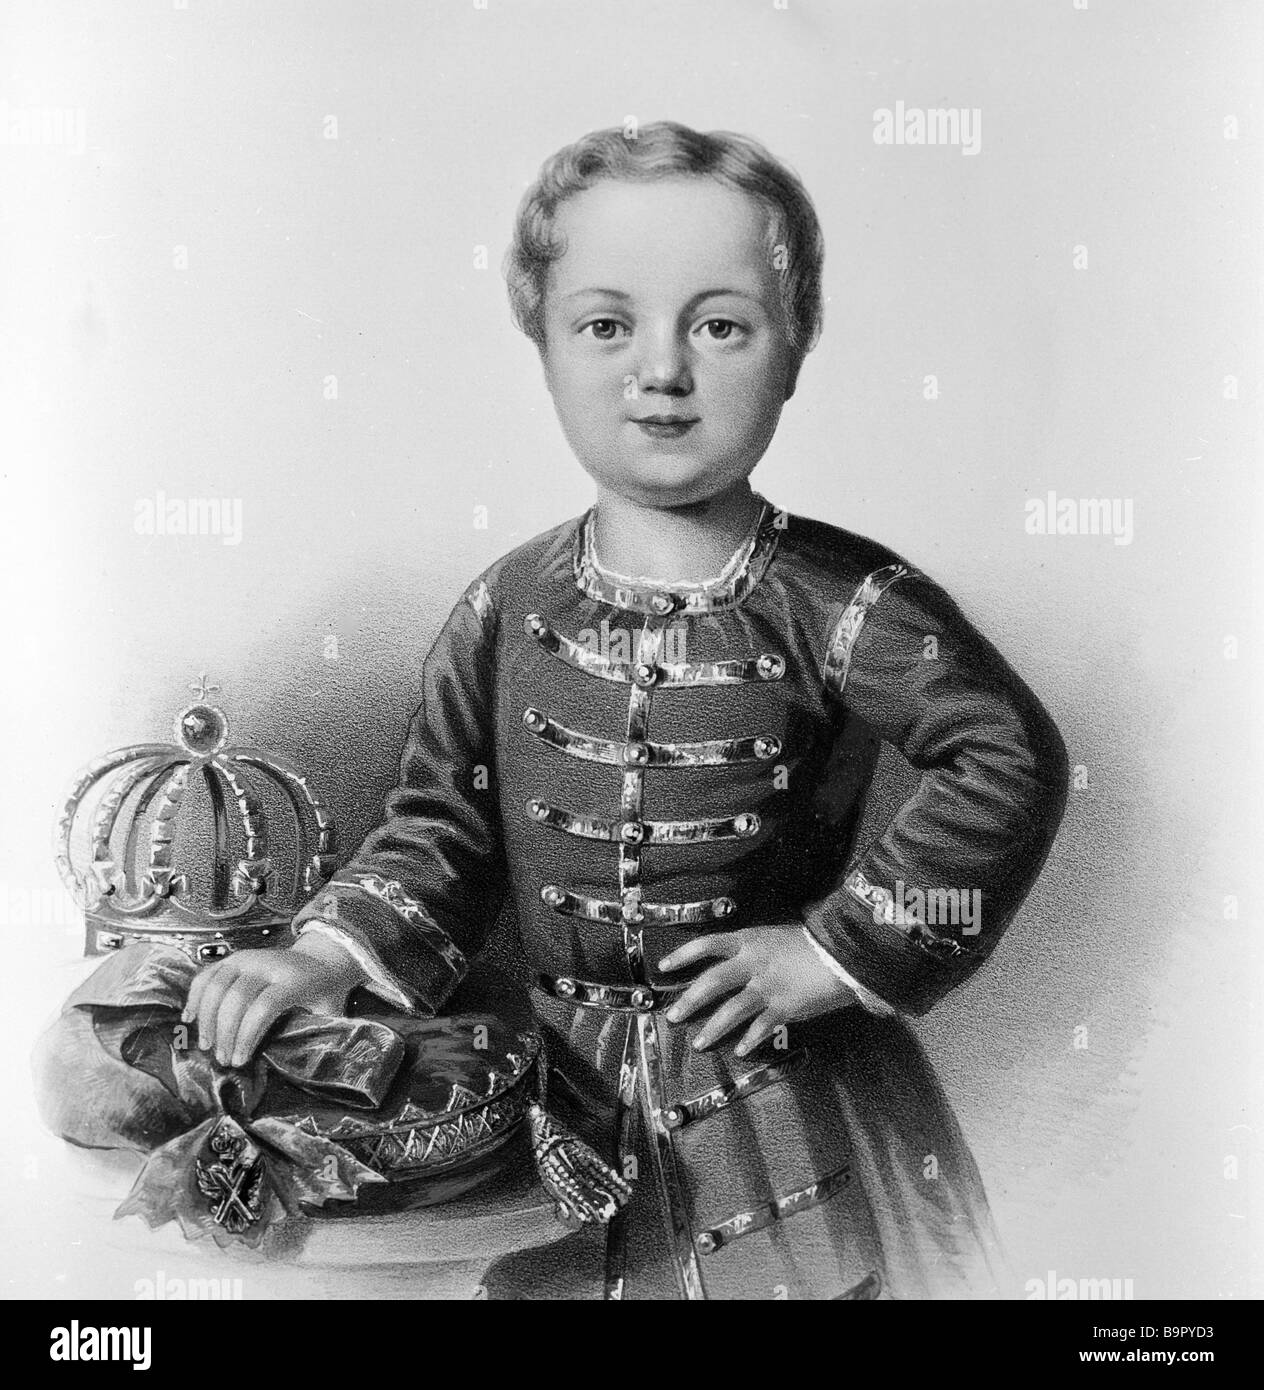 Сын петра том 1. Портрет Петра 1 в детстве.